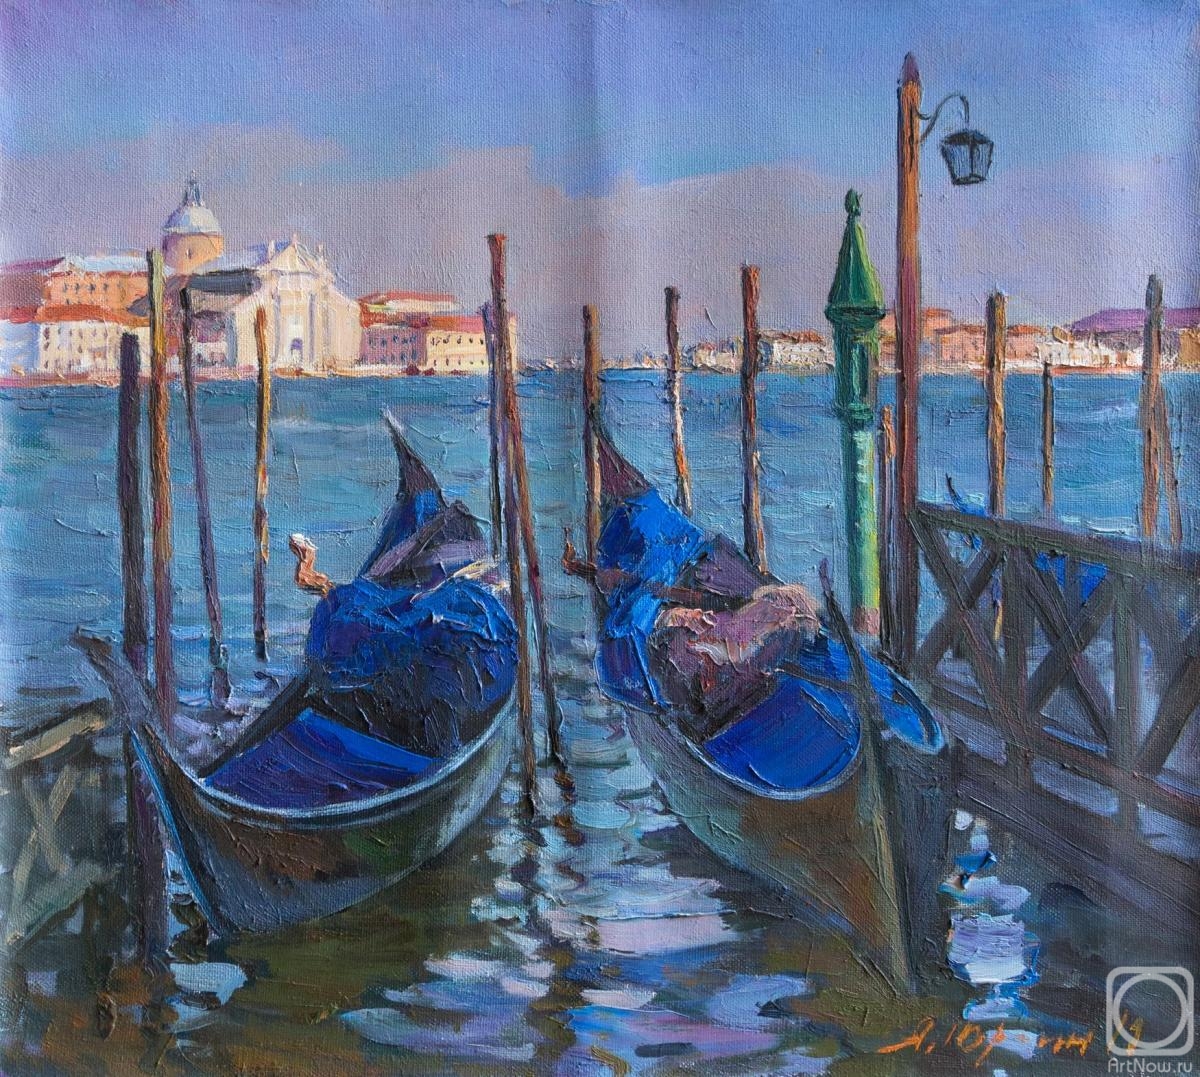 Yurgin Alexander. Venice